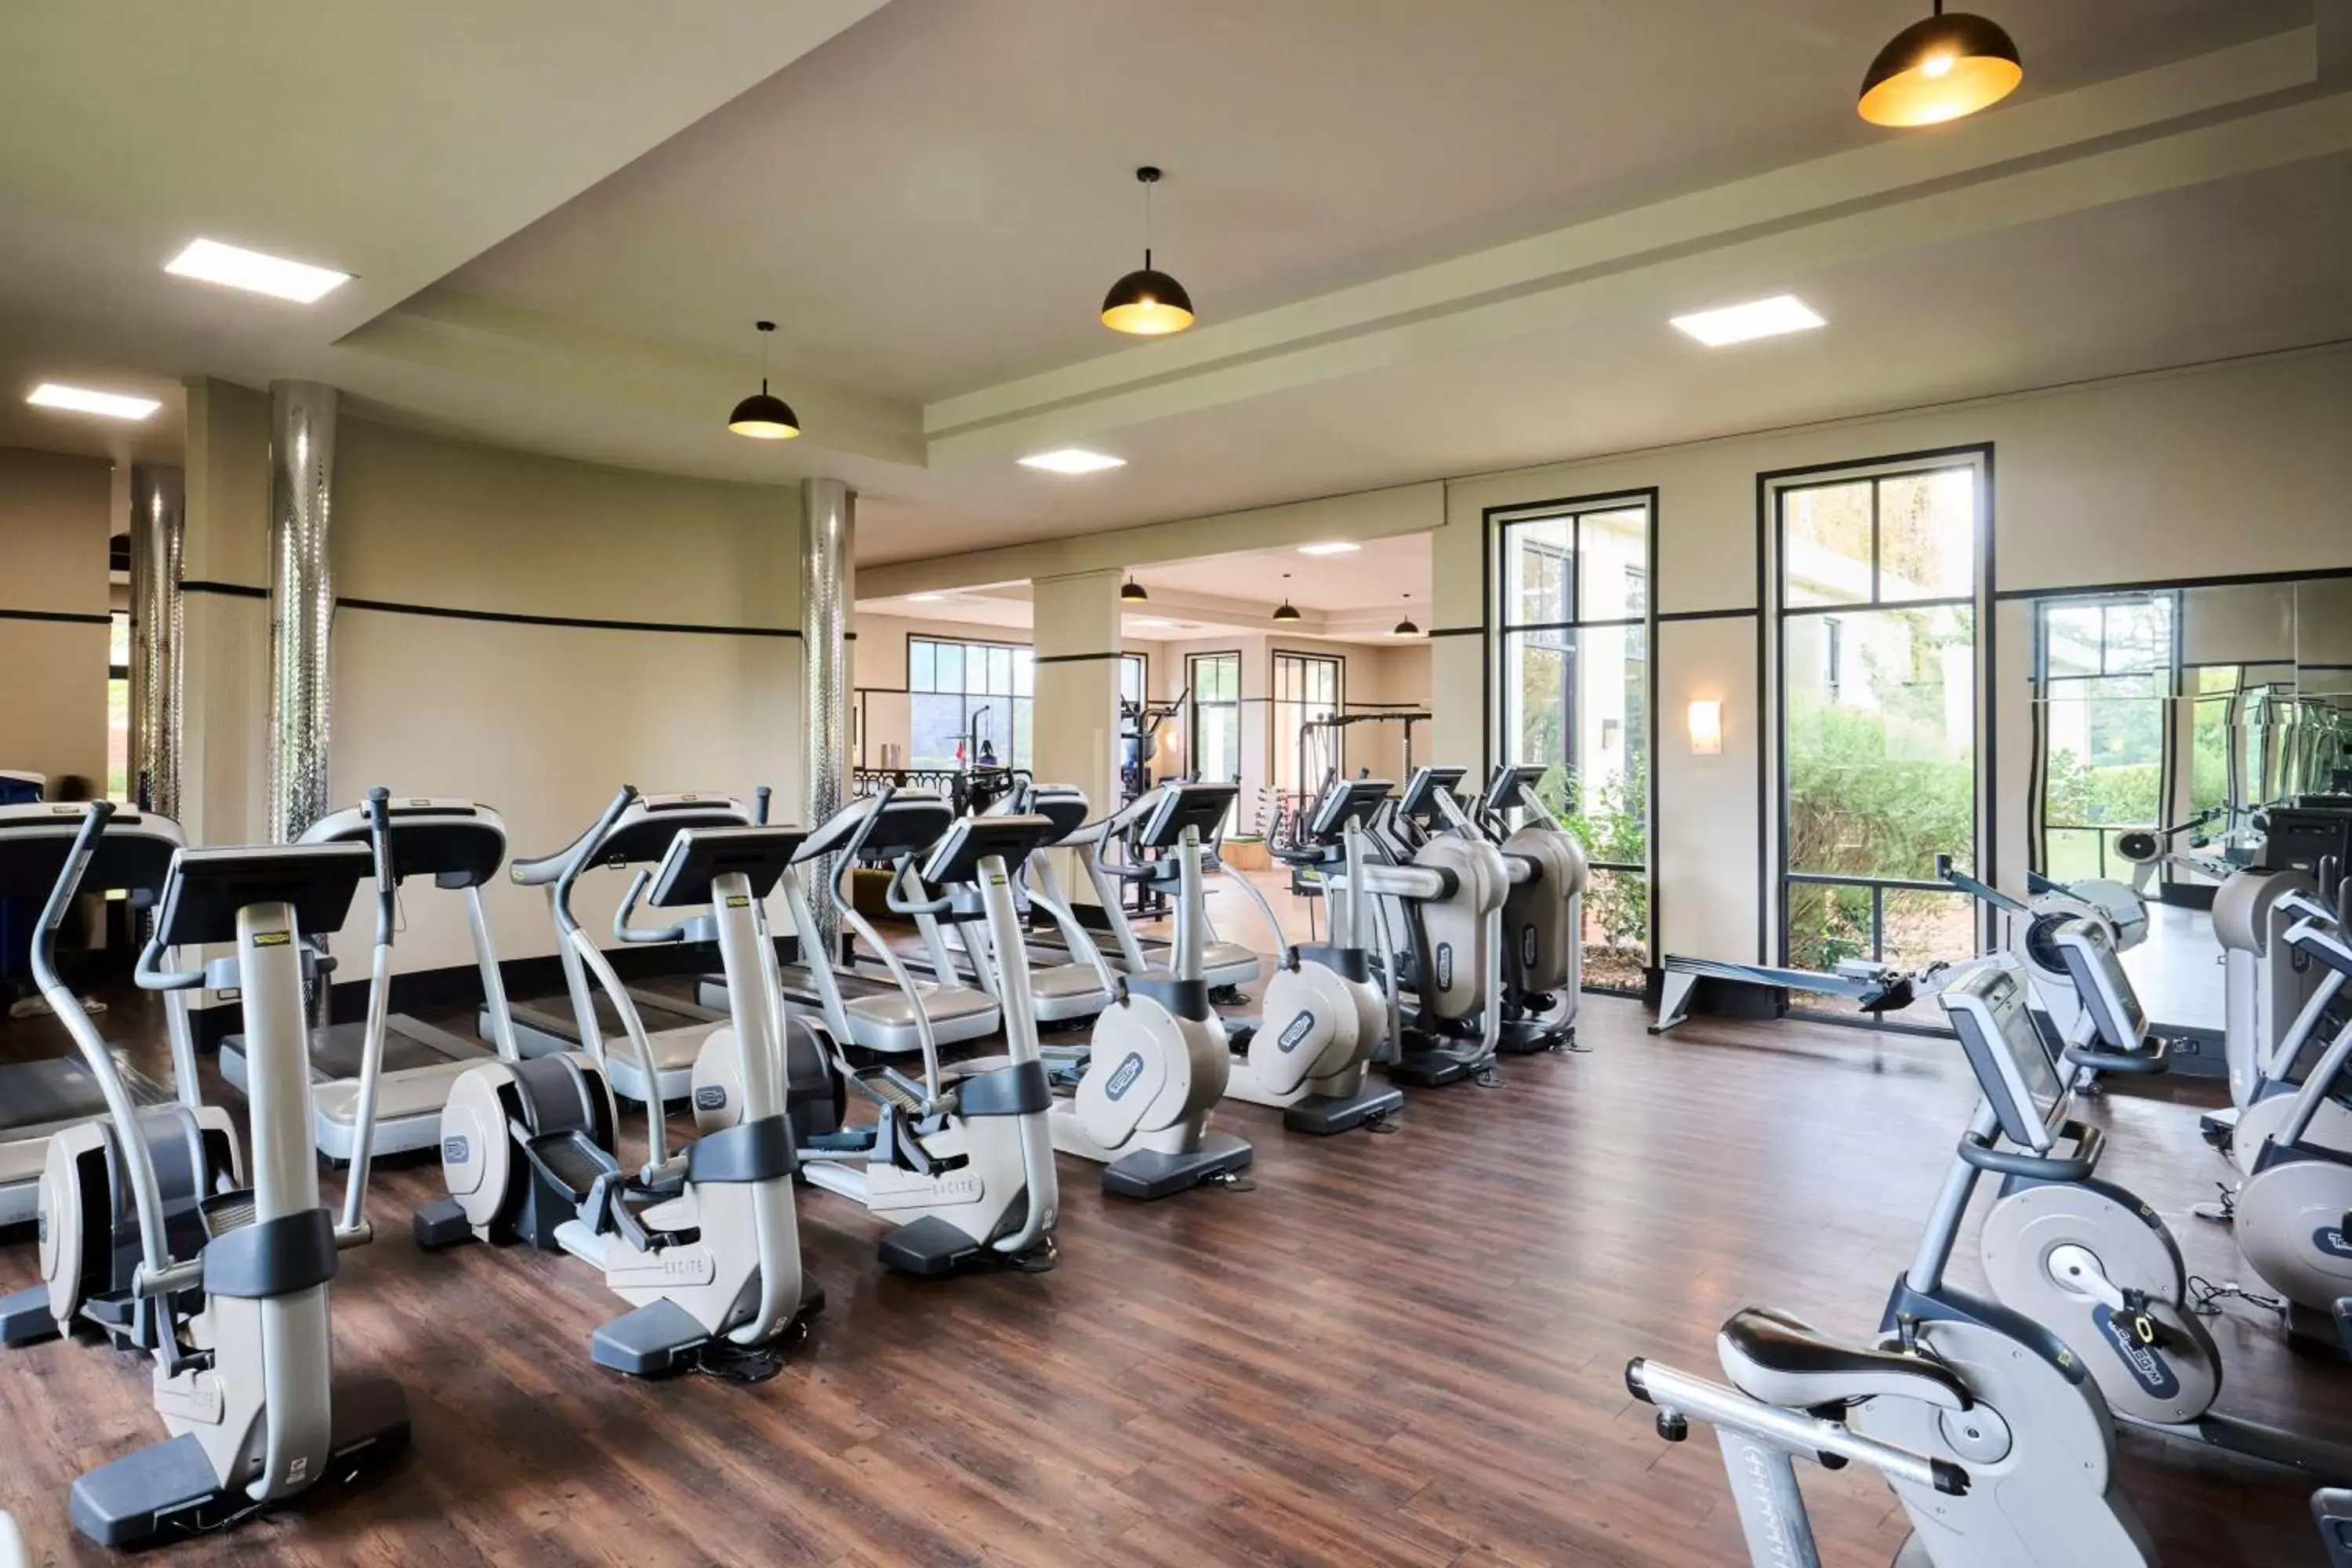 Fitness centre/facilities, Fitness Center/Facilities in Hyatt Hotel Canberra - A Park Hyatt Hotel